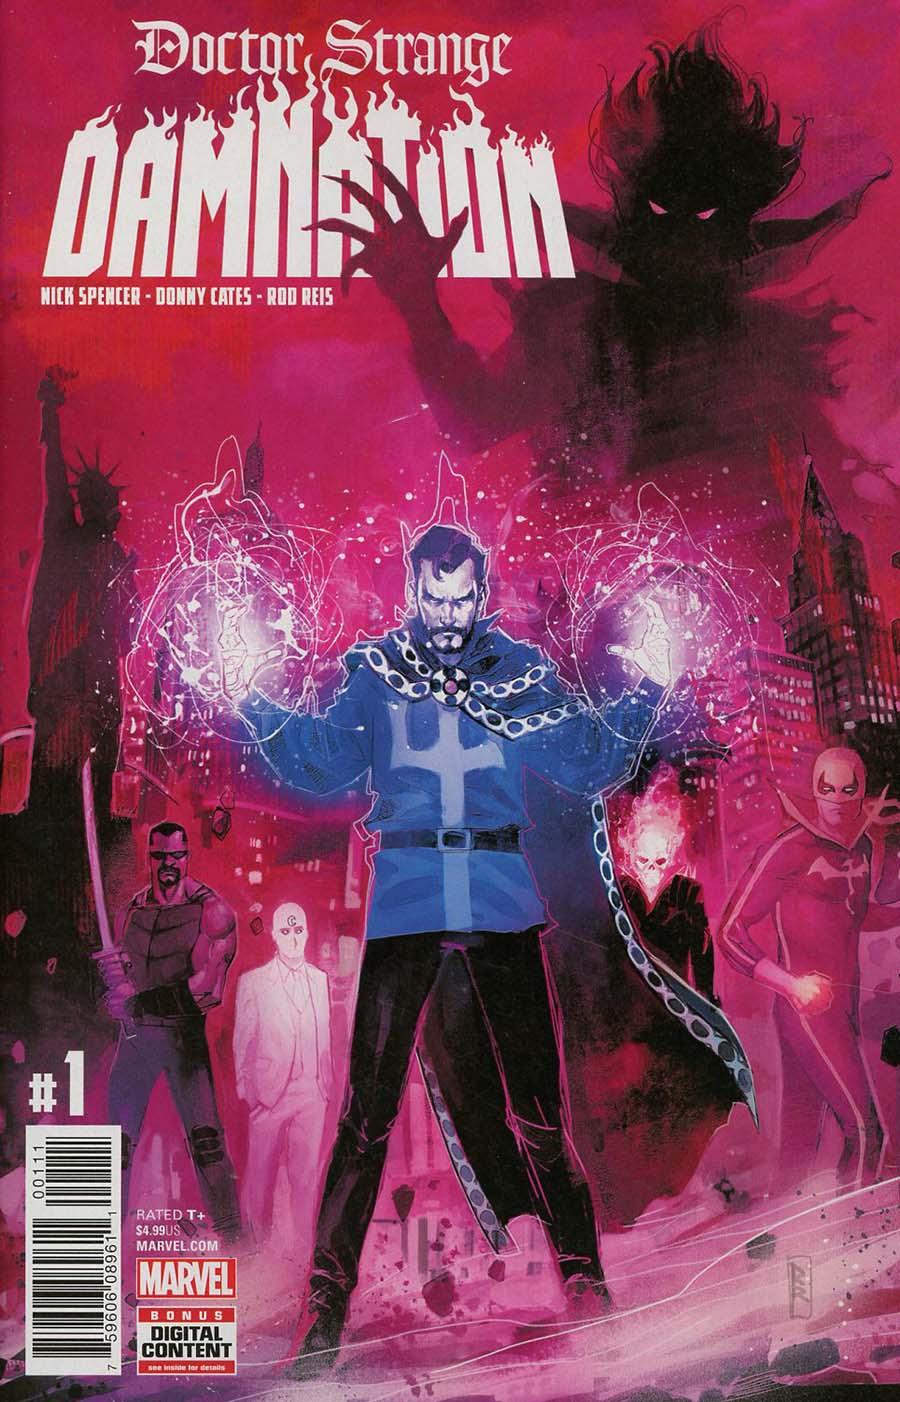 Doctor Strange Damnation Vol. 1 #1